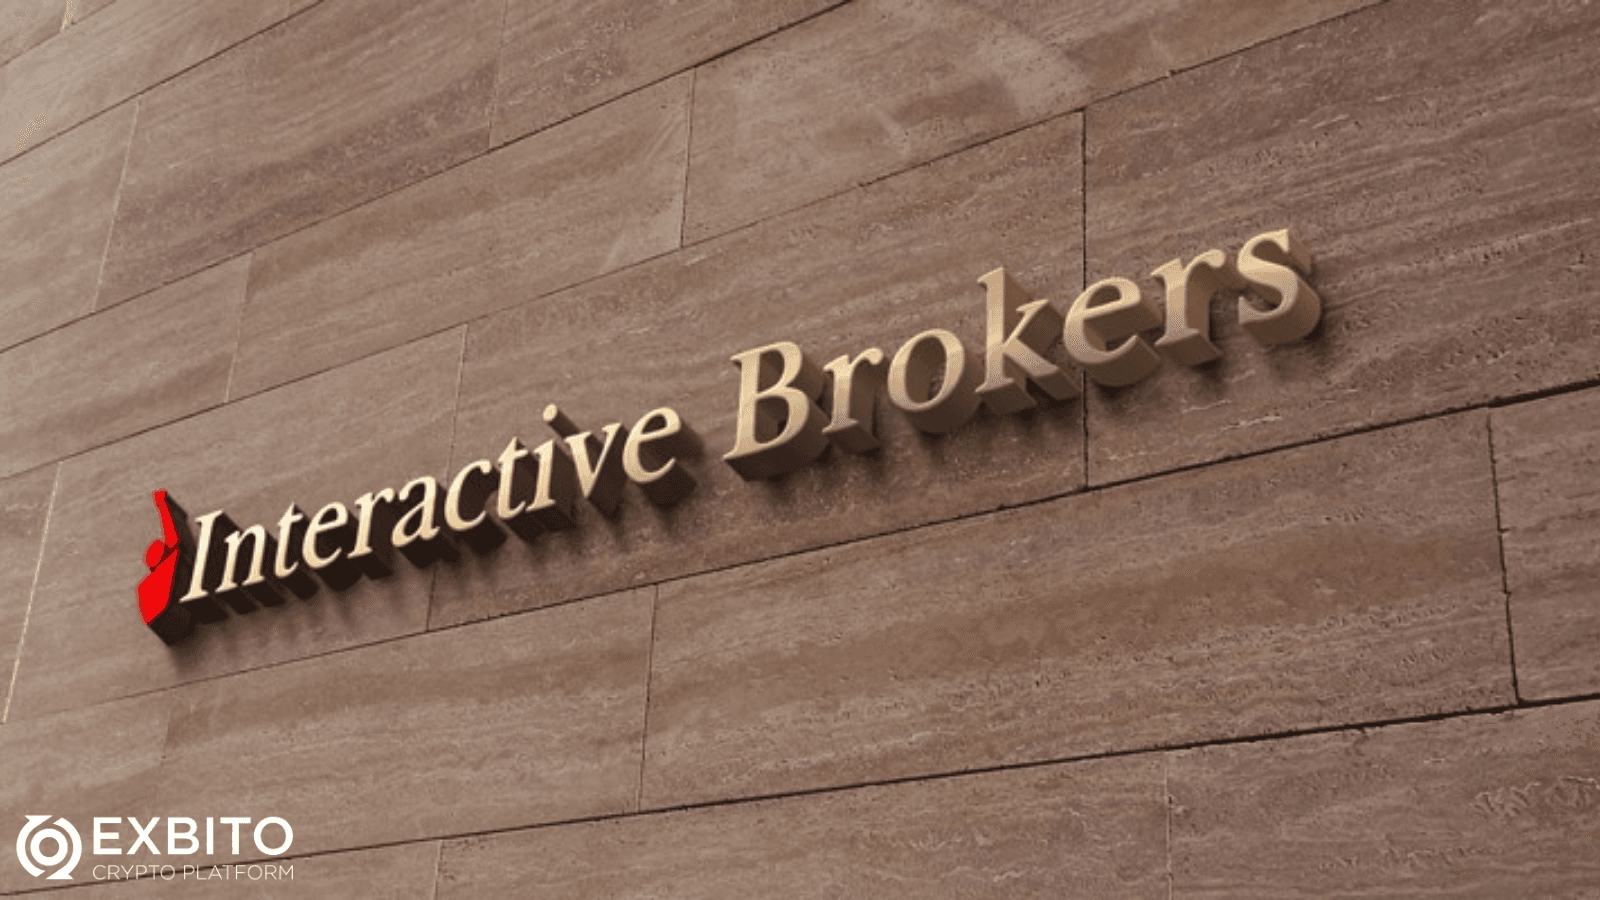 کارگزاری تعاملی (Interactive Brokers) چیست؟